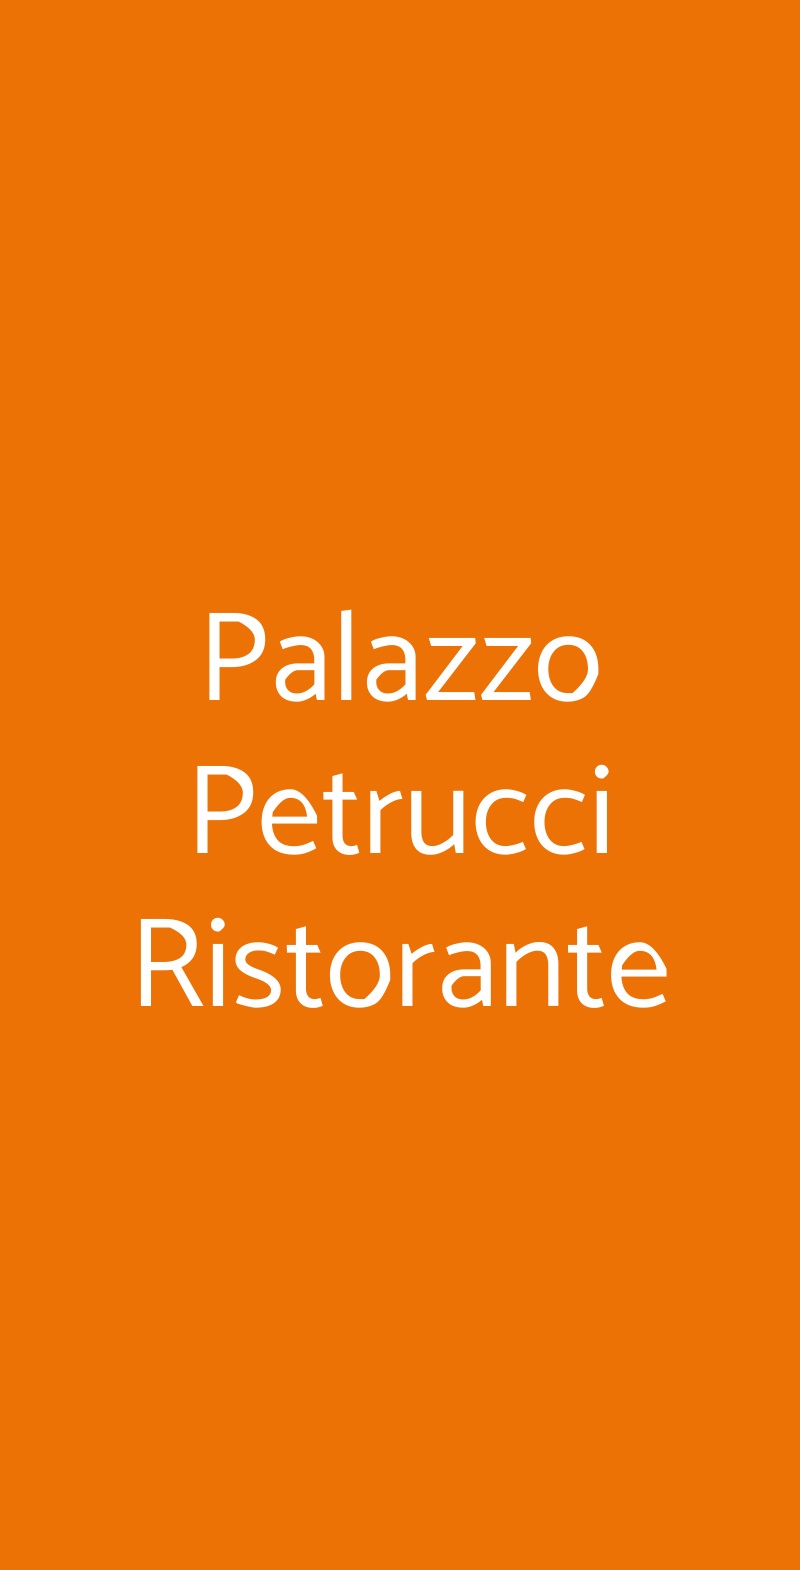 Palazzo Petrucci Ristorante Napoli menù 1 pagina